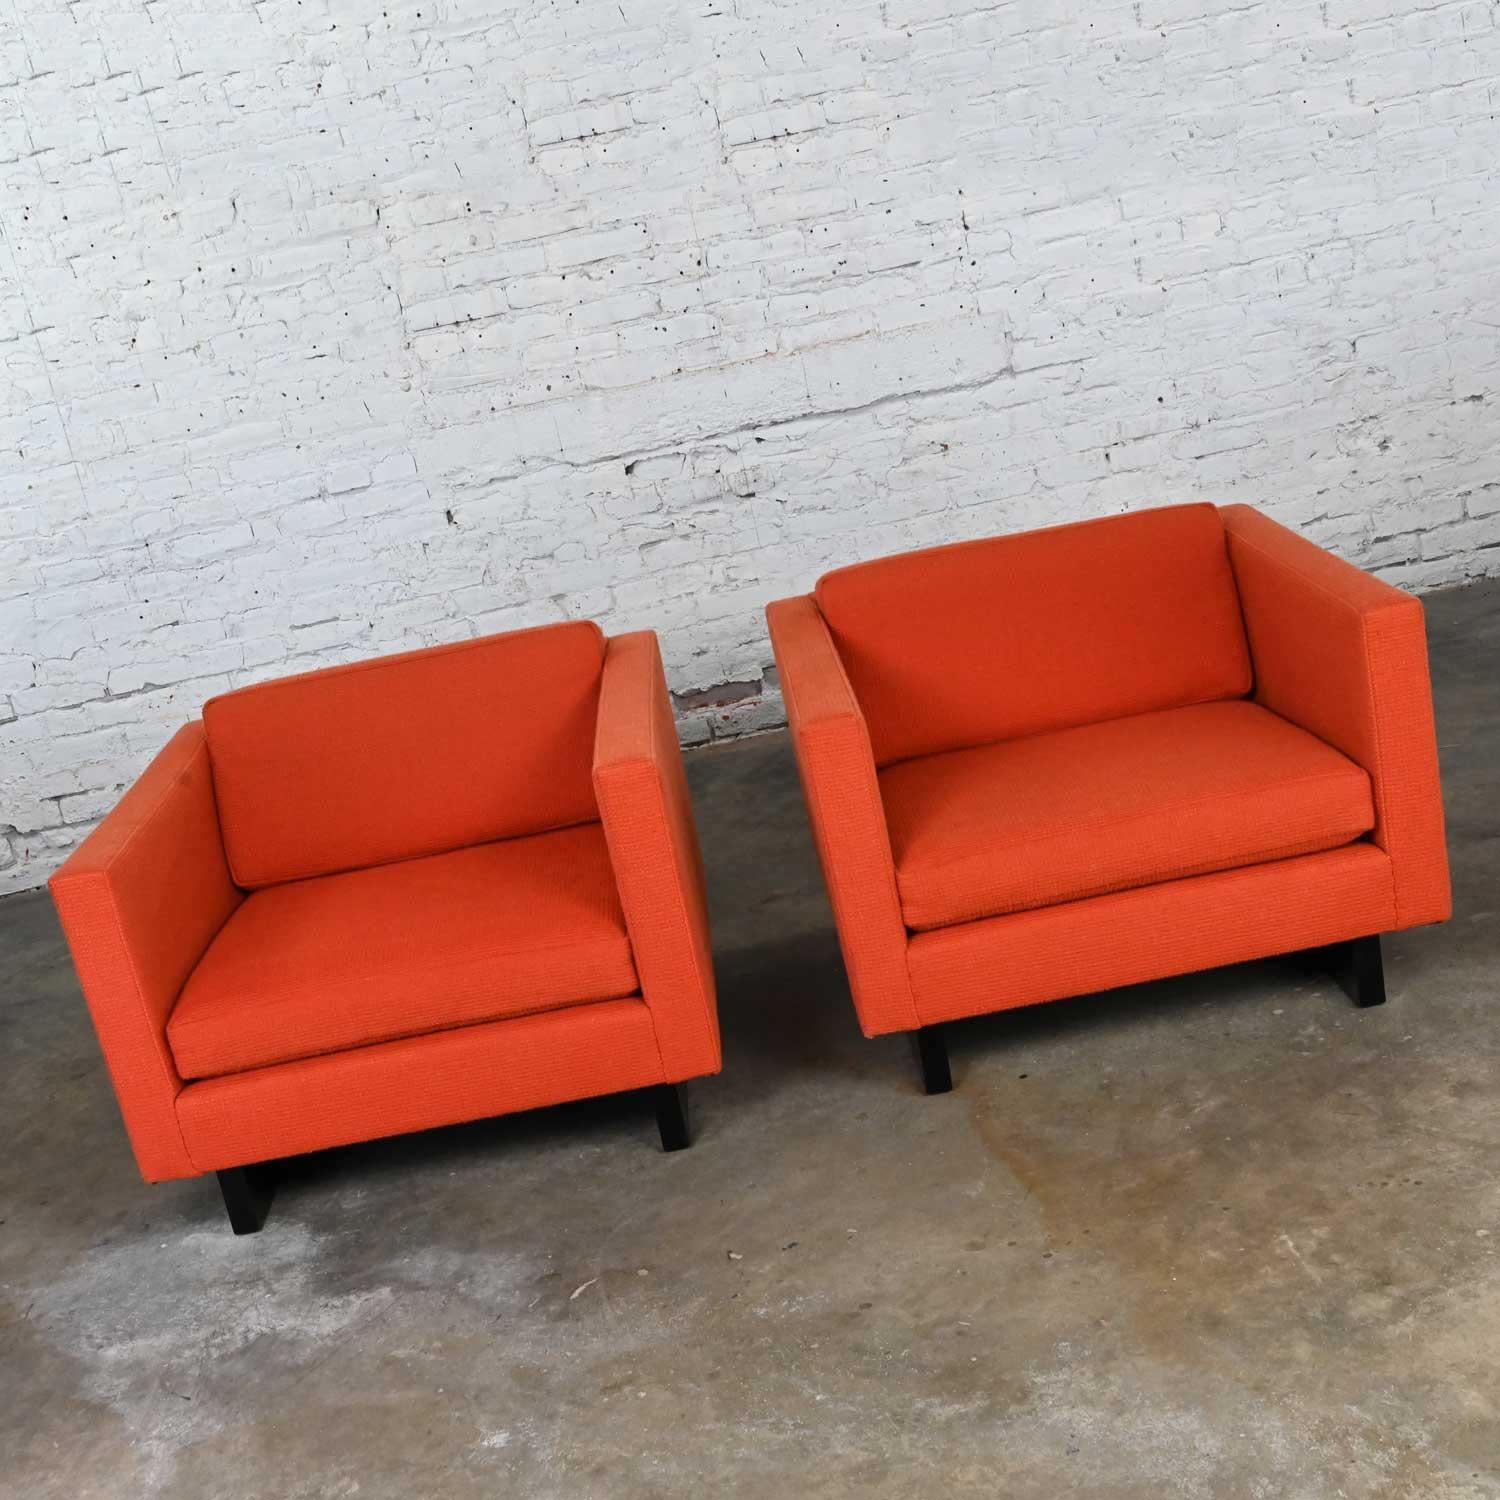 Prächtige Vintage MCM (a.k.a. Mid-Century Modern) bis Modern Harvey Probber orange Smoking Stil 1571 Club Stühle mit schwarz lackierten Schlitten Basen, ein Paar. Schöner Zustand, wenn man bedenkt, dass sie Vintage und nicht neu sind, so dass sie